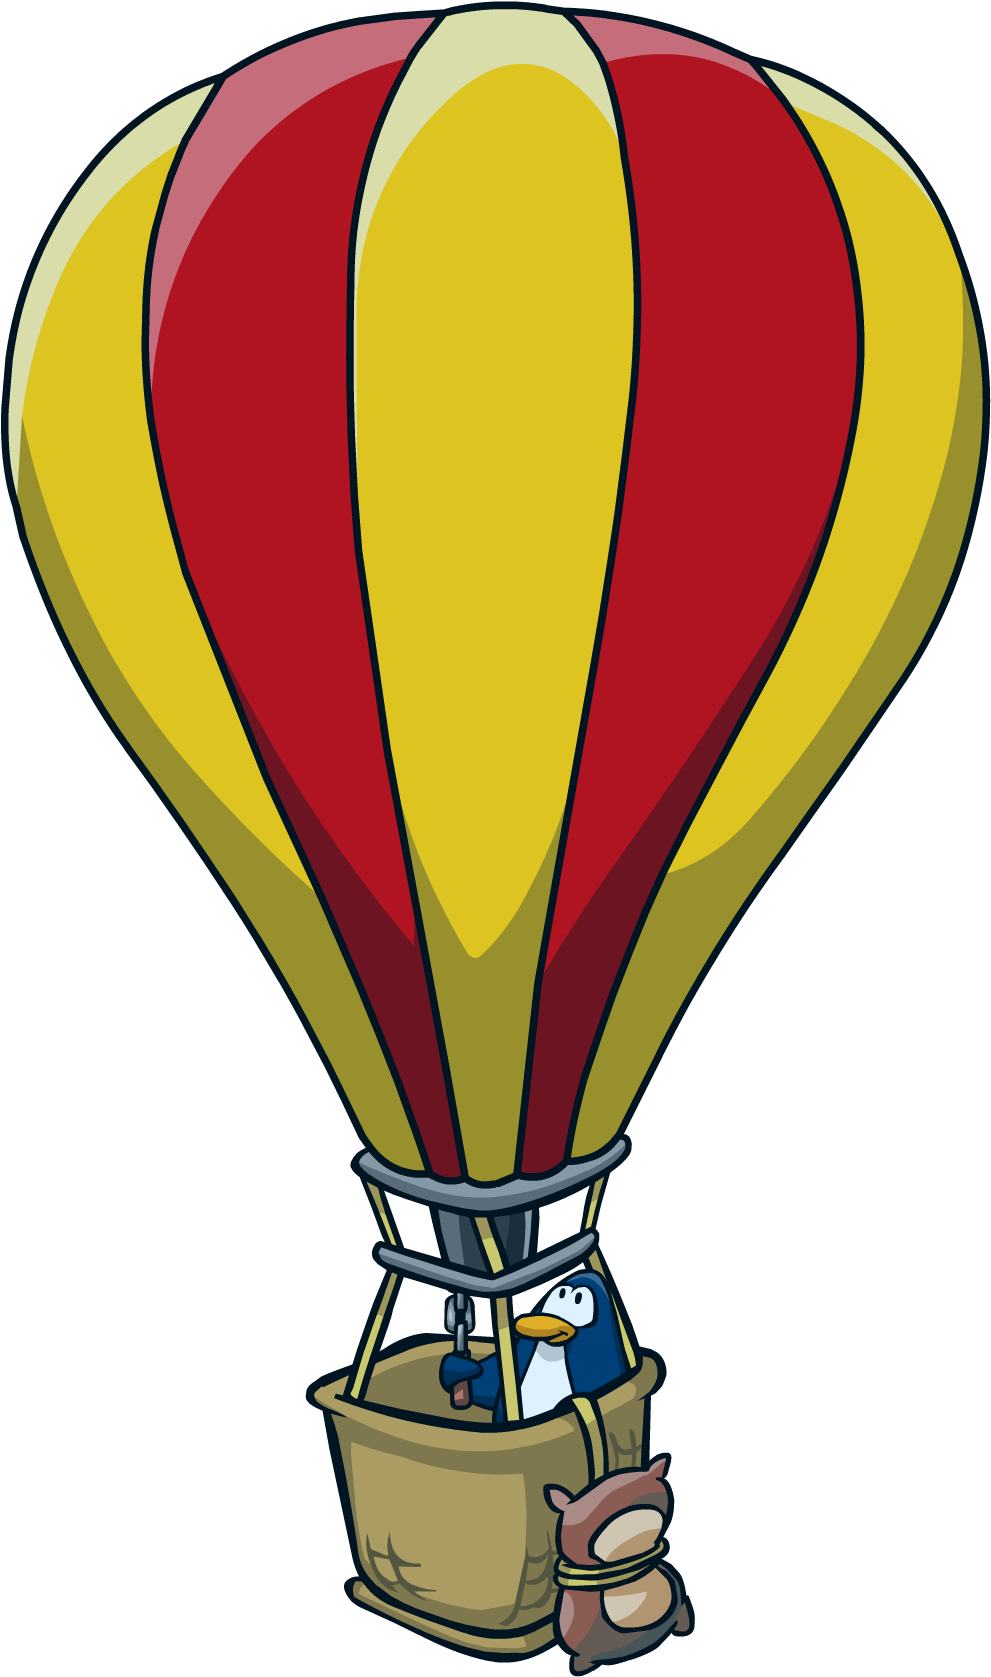 Air Balloon Images - Hot Air Balloon Penguin (1100x1720)